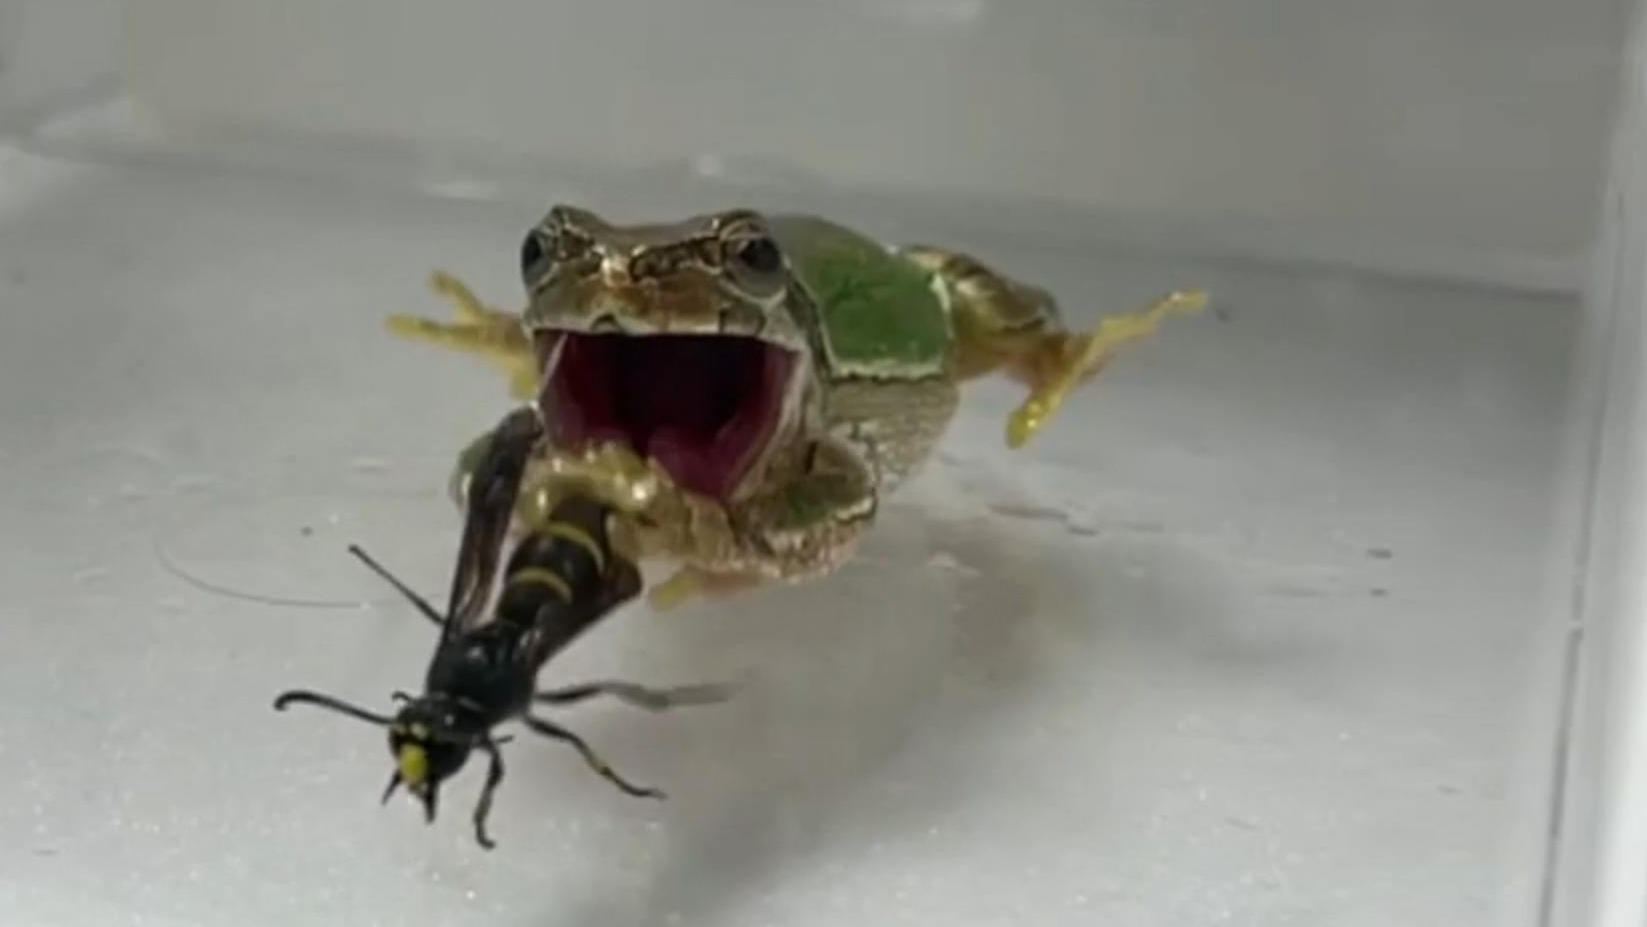 ¡Las avispas macho se defienden con un pene dentado!  Curiosa defensa en el video